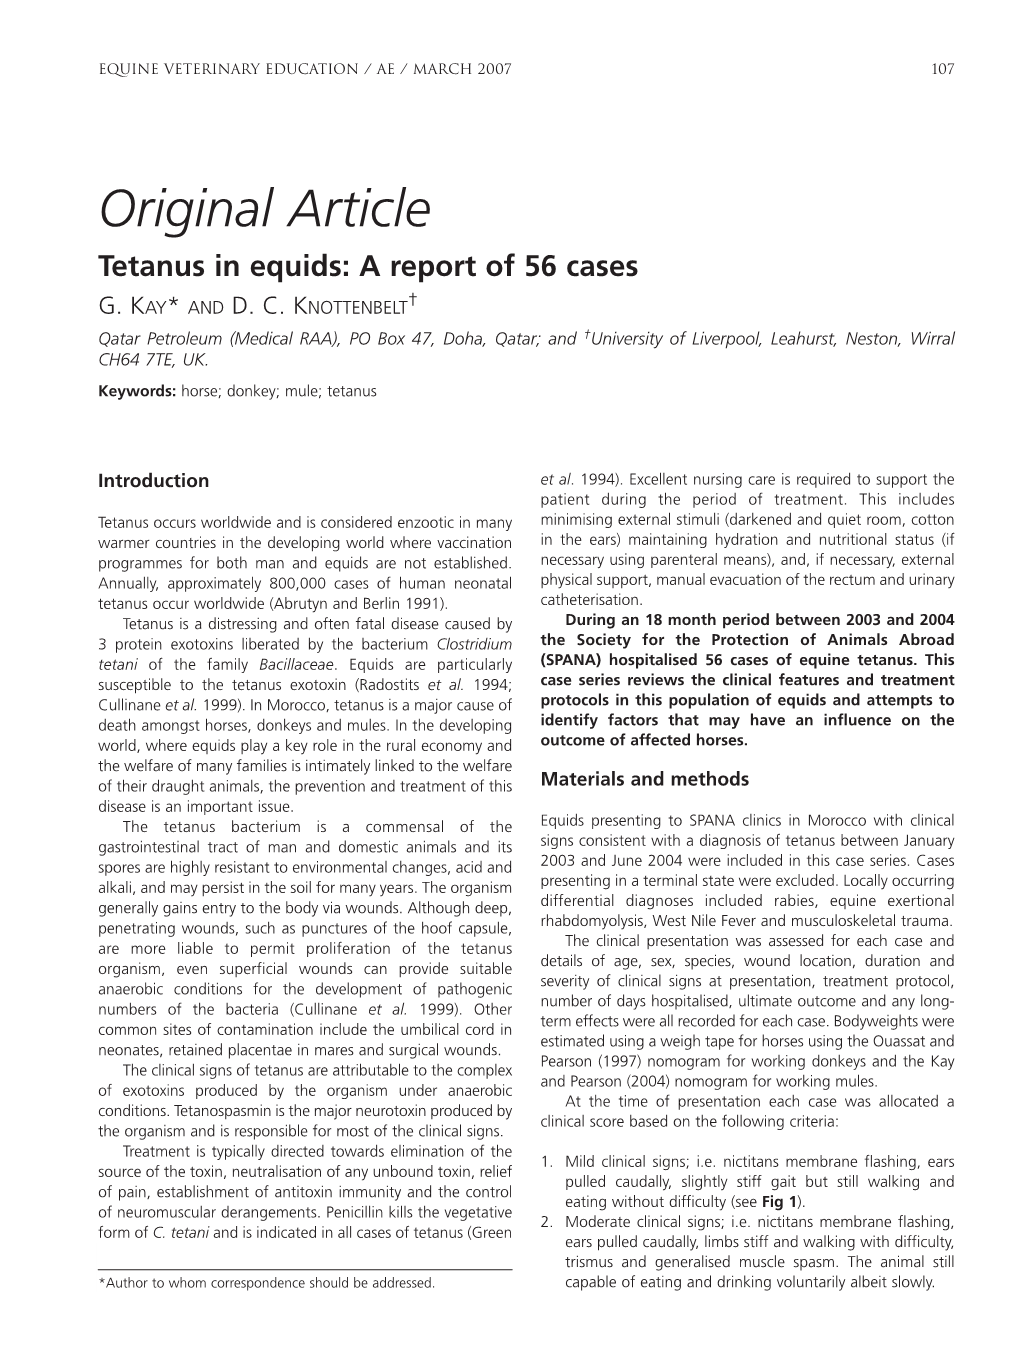 Original Article Tetanus in Equids: a Report of 56 Cases G